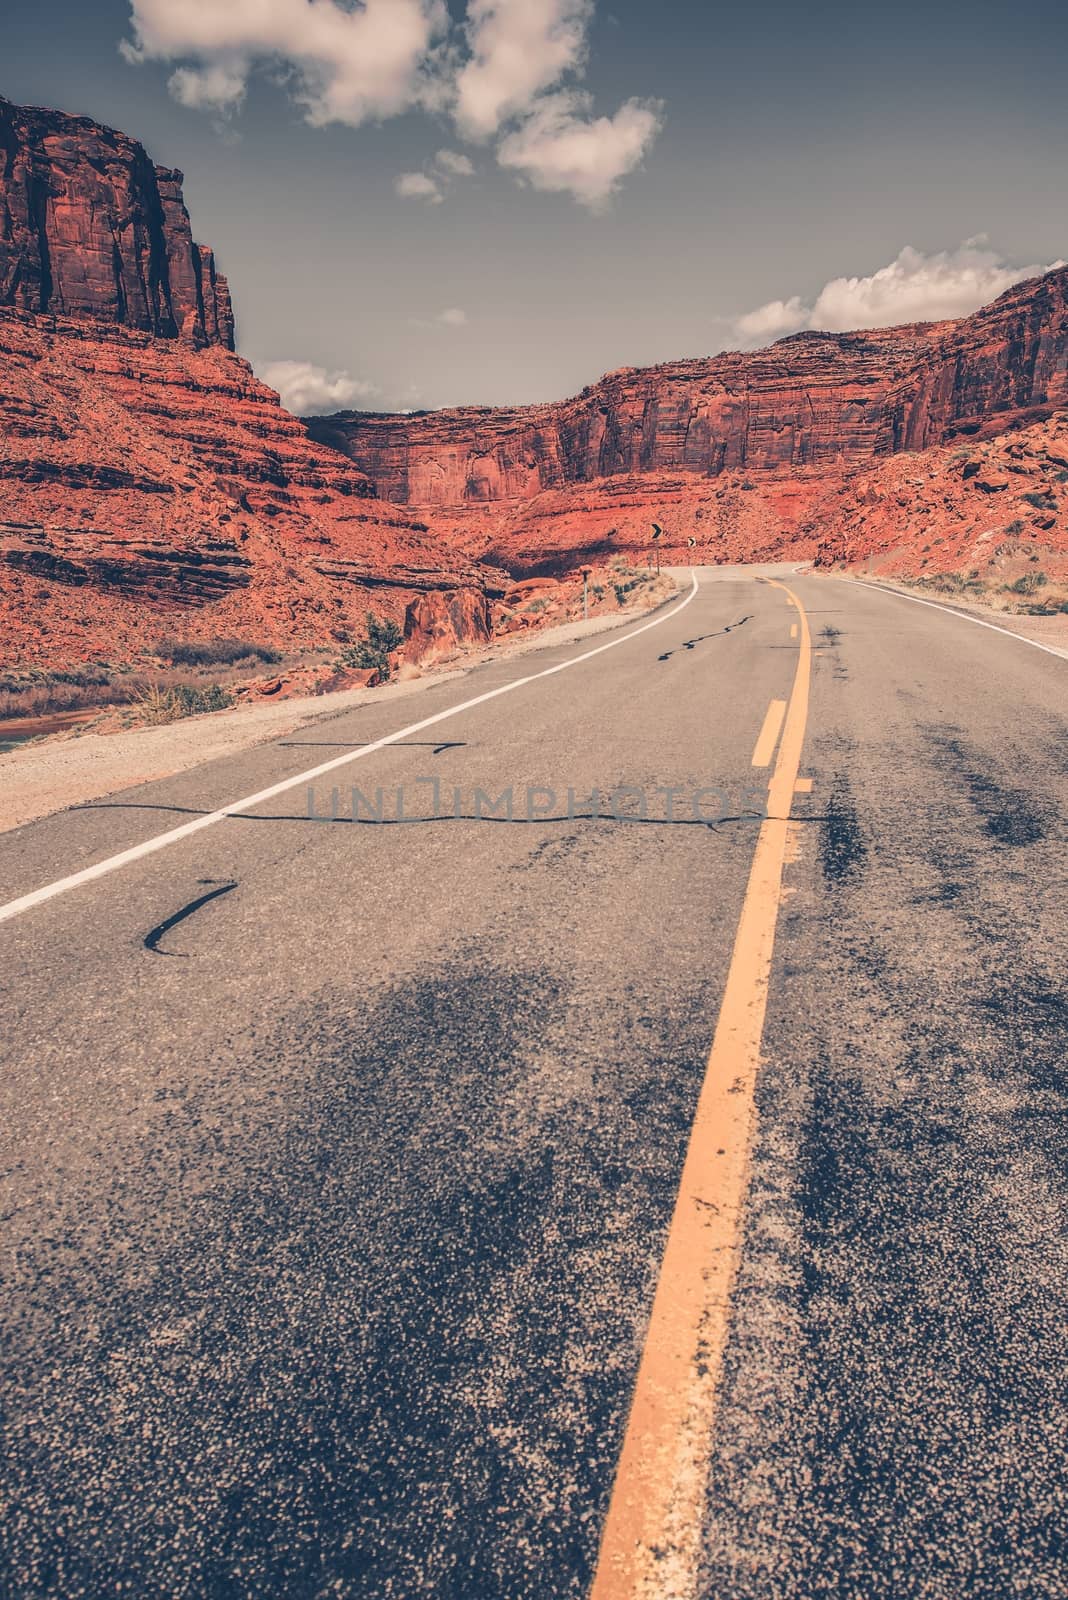 Scenic Utah Desert Road by welcomia